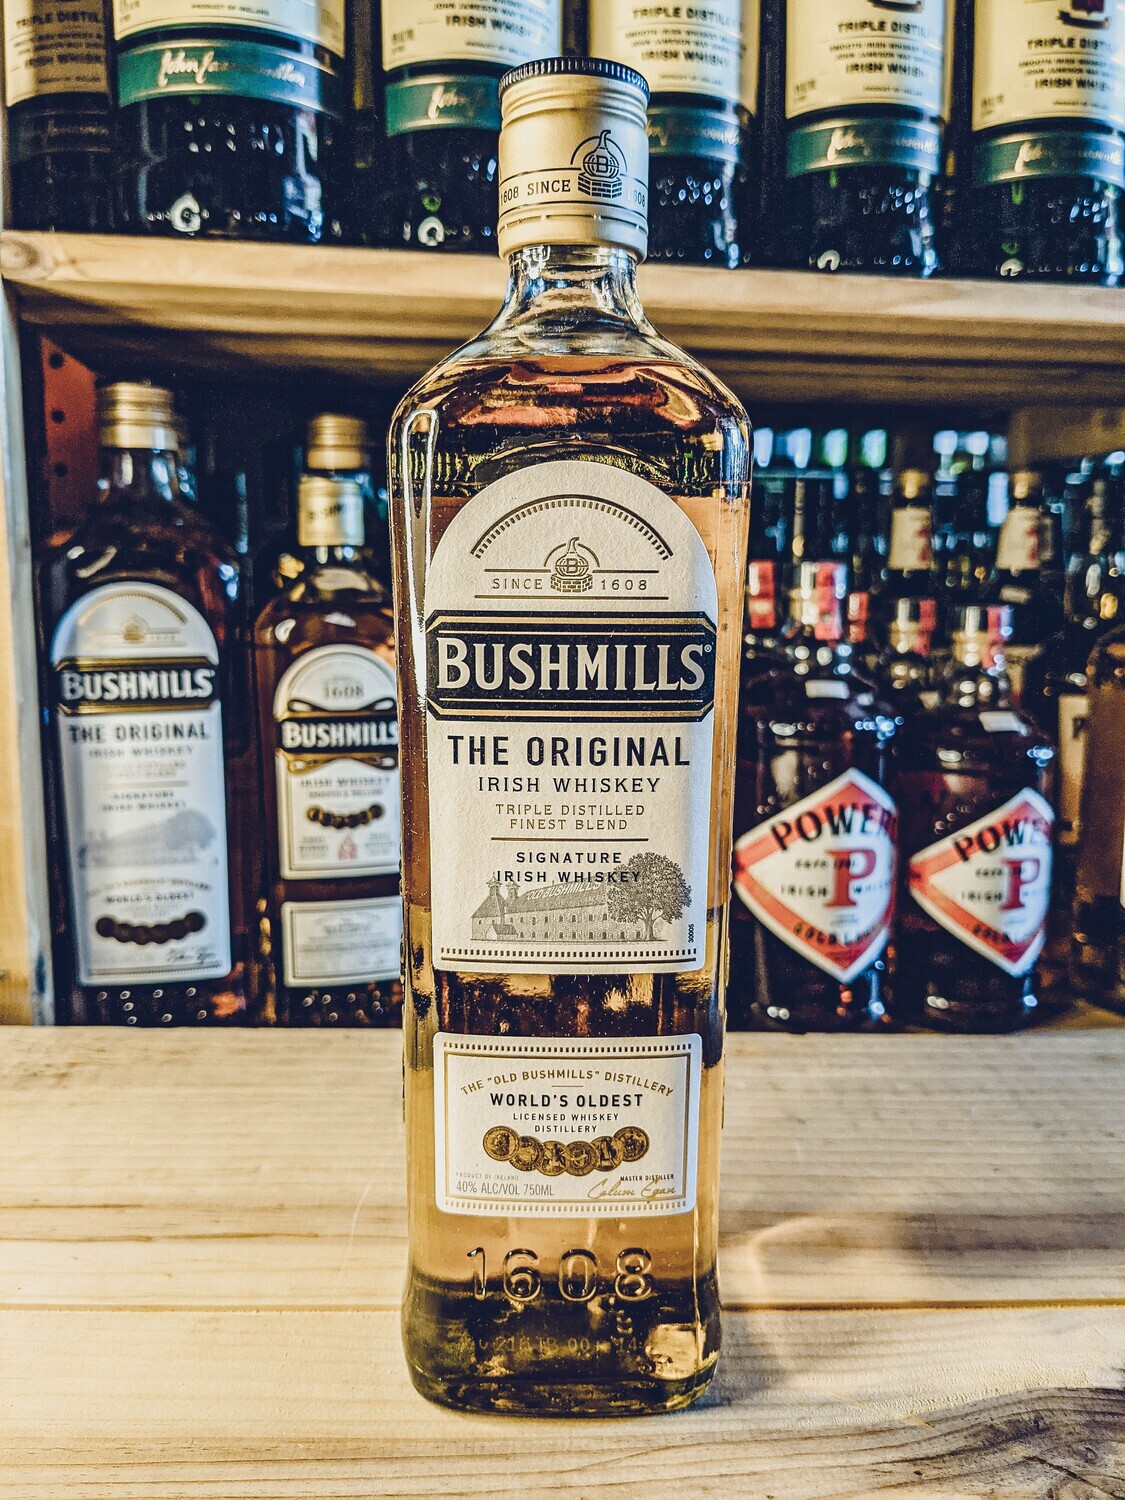 Bushmills Irish Whiskey 750